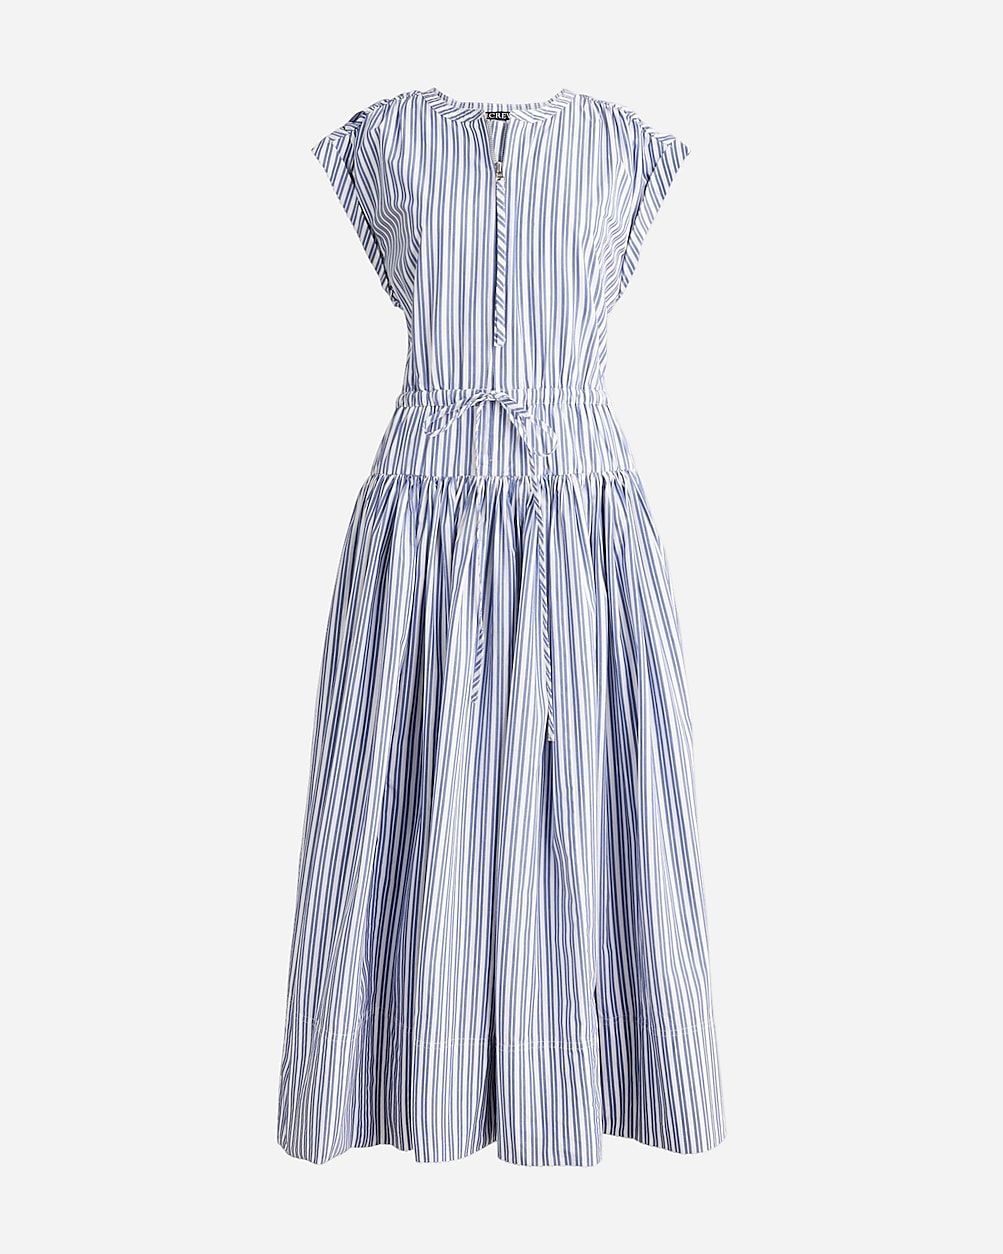 Drop-waist midi dress in striped cotton poplin | J.Crew US